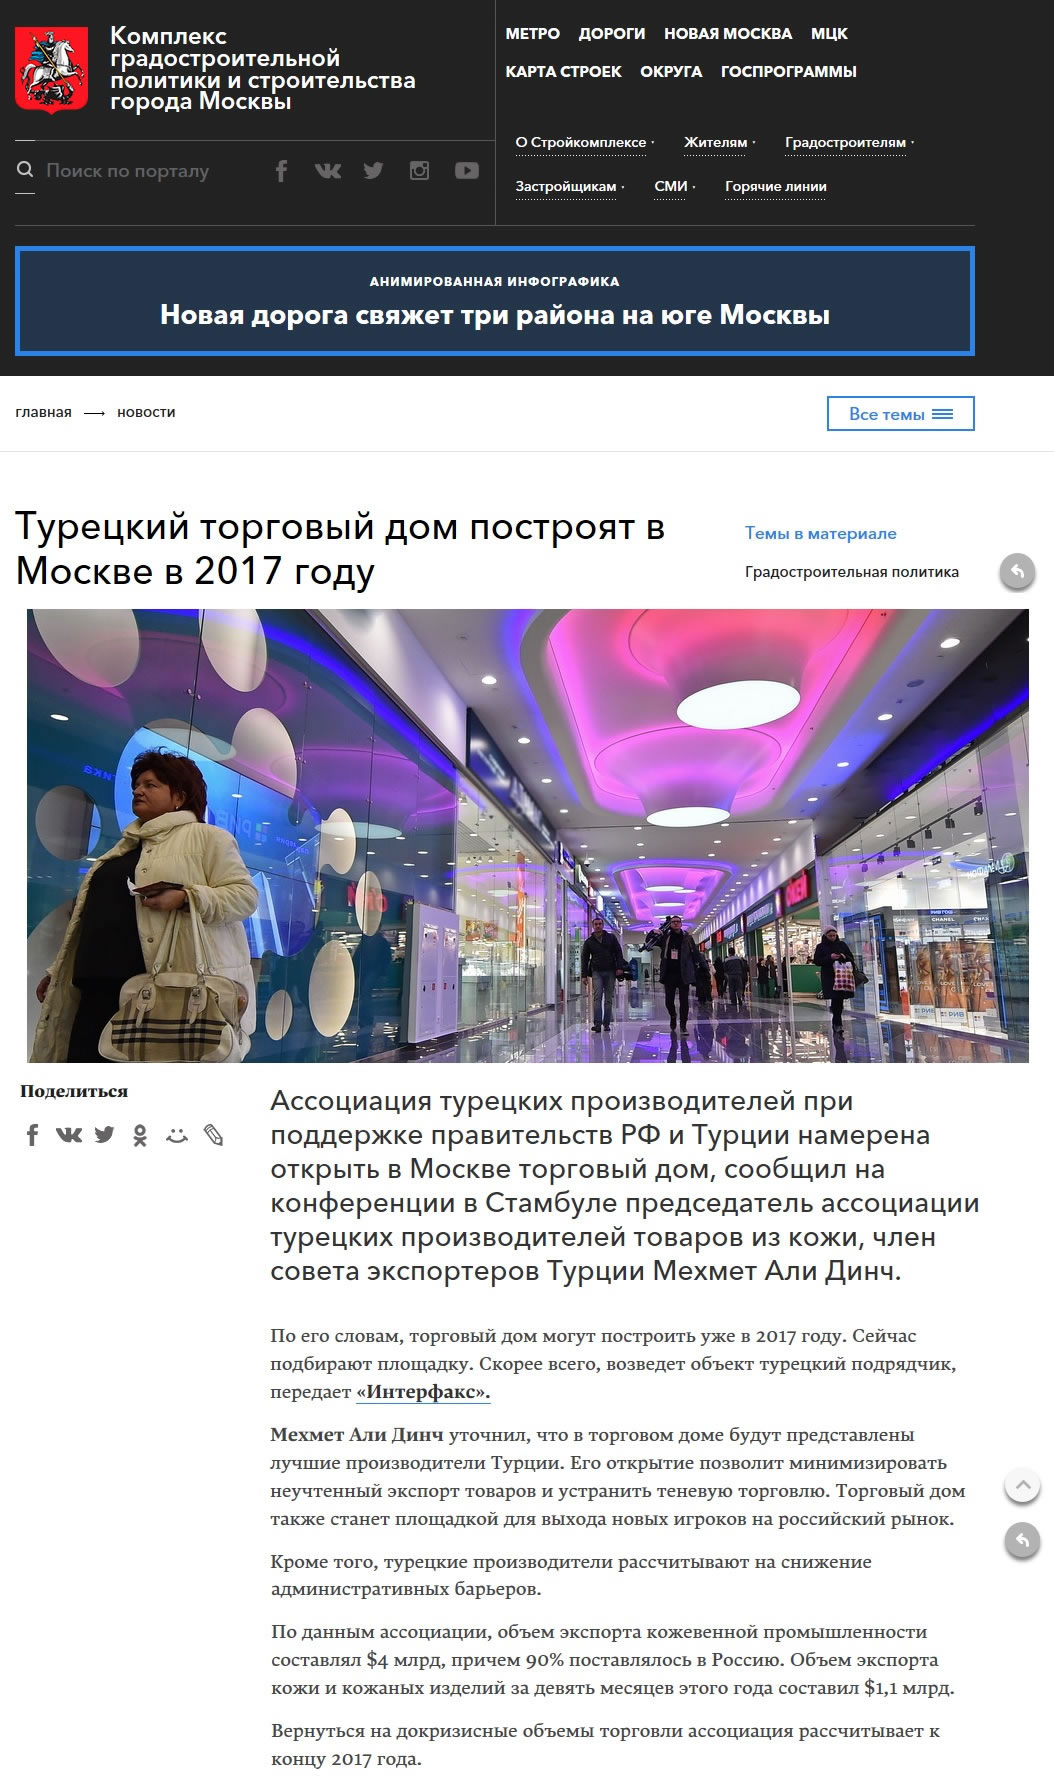 www.stroi.mos.ru 27.10.2016